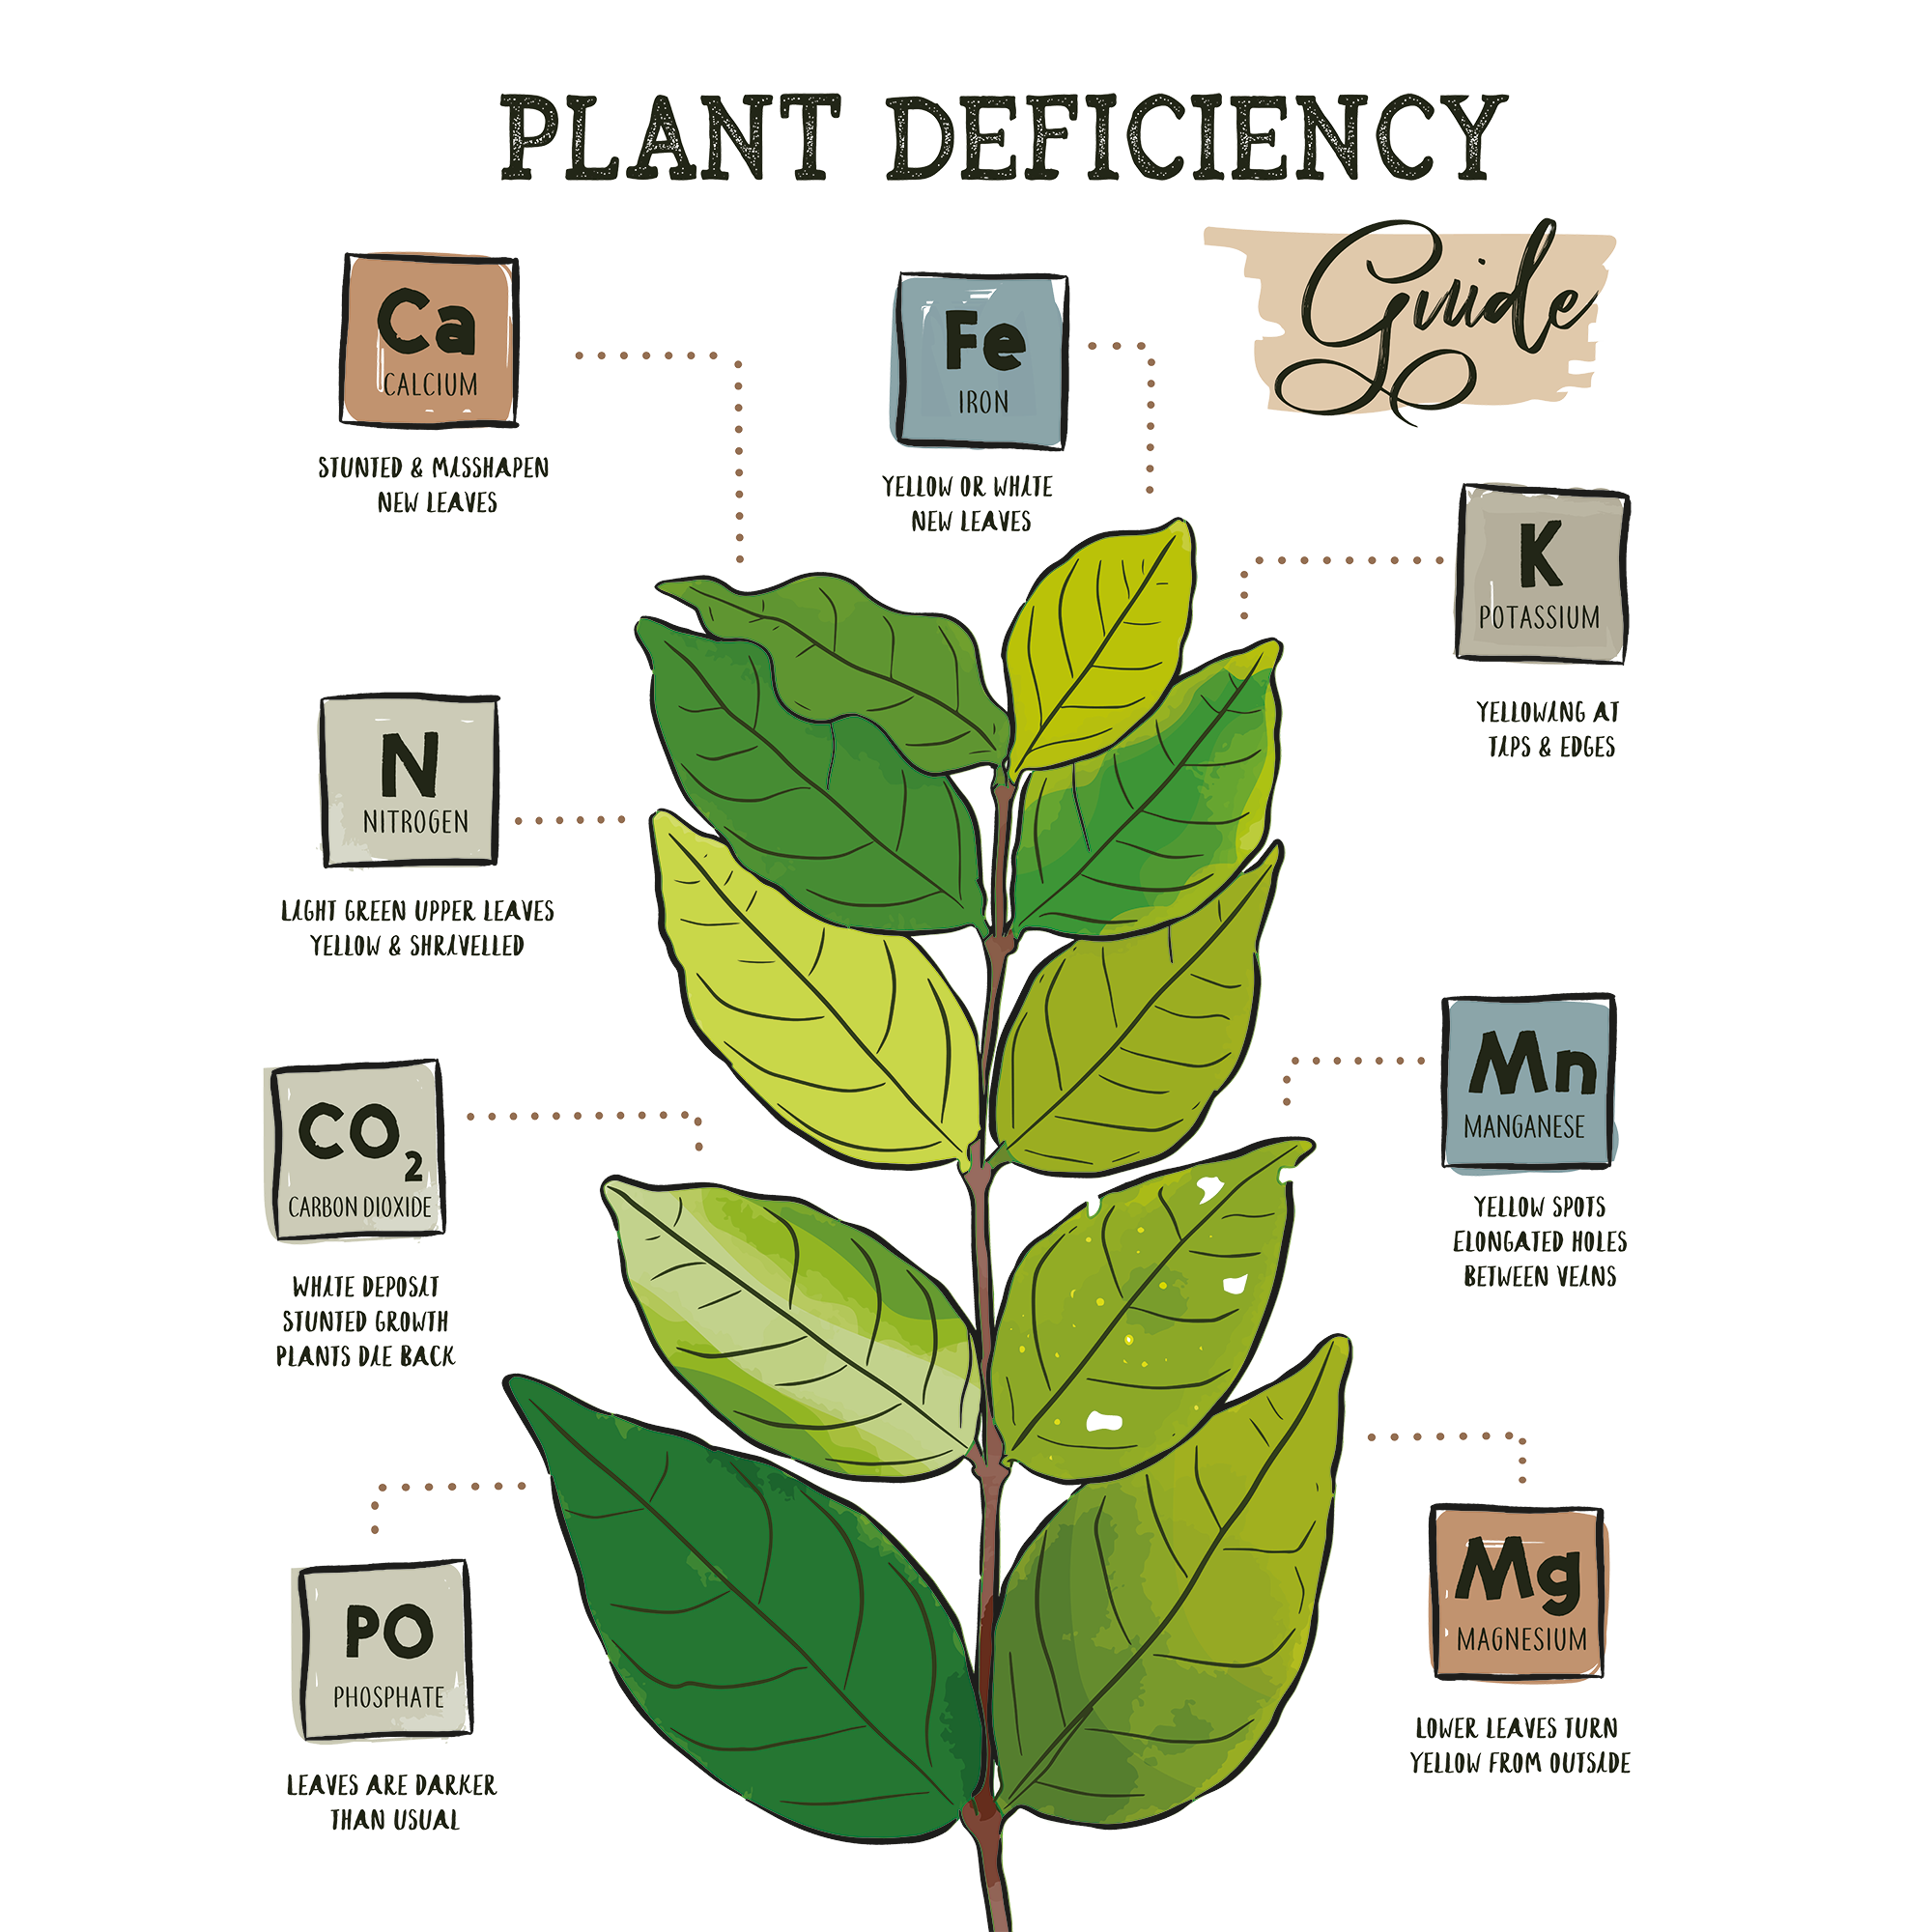 Eine Pflanze mit farblich unterschiedlichen Blättern, dies dueutet auf Mangelerscheinungen hin. Man sieht um die Pflanze herum die wichtigsten Nährstoffe.